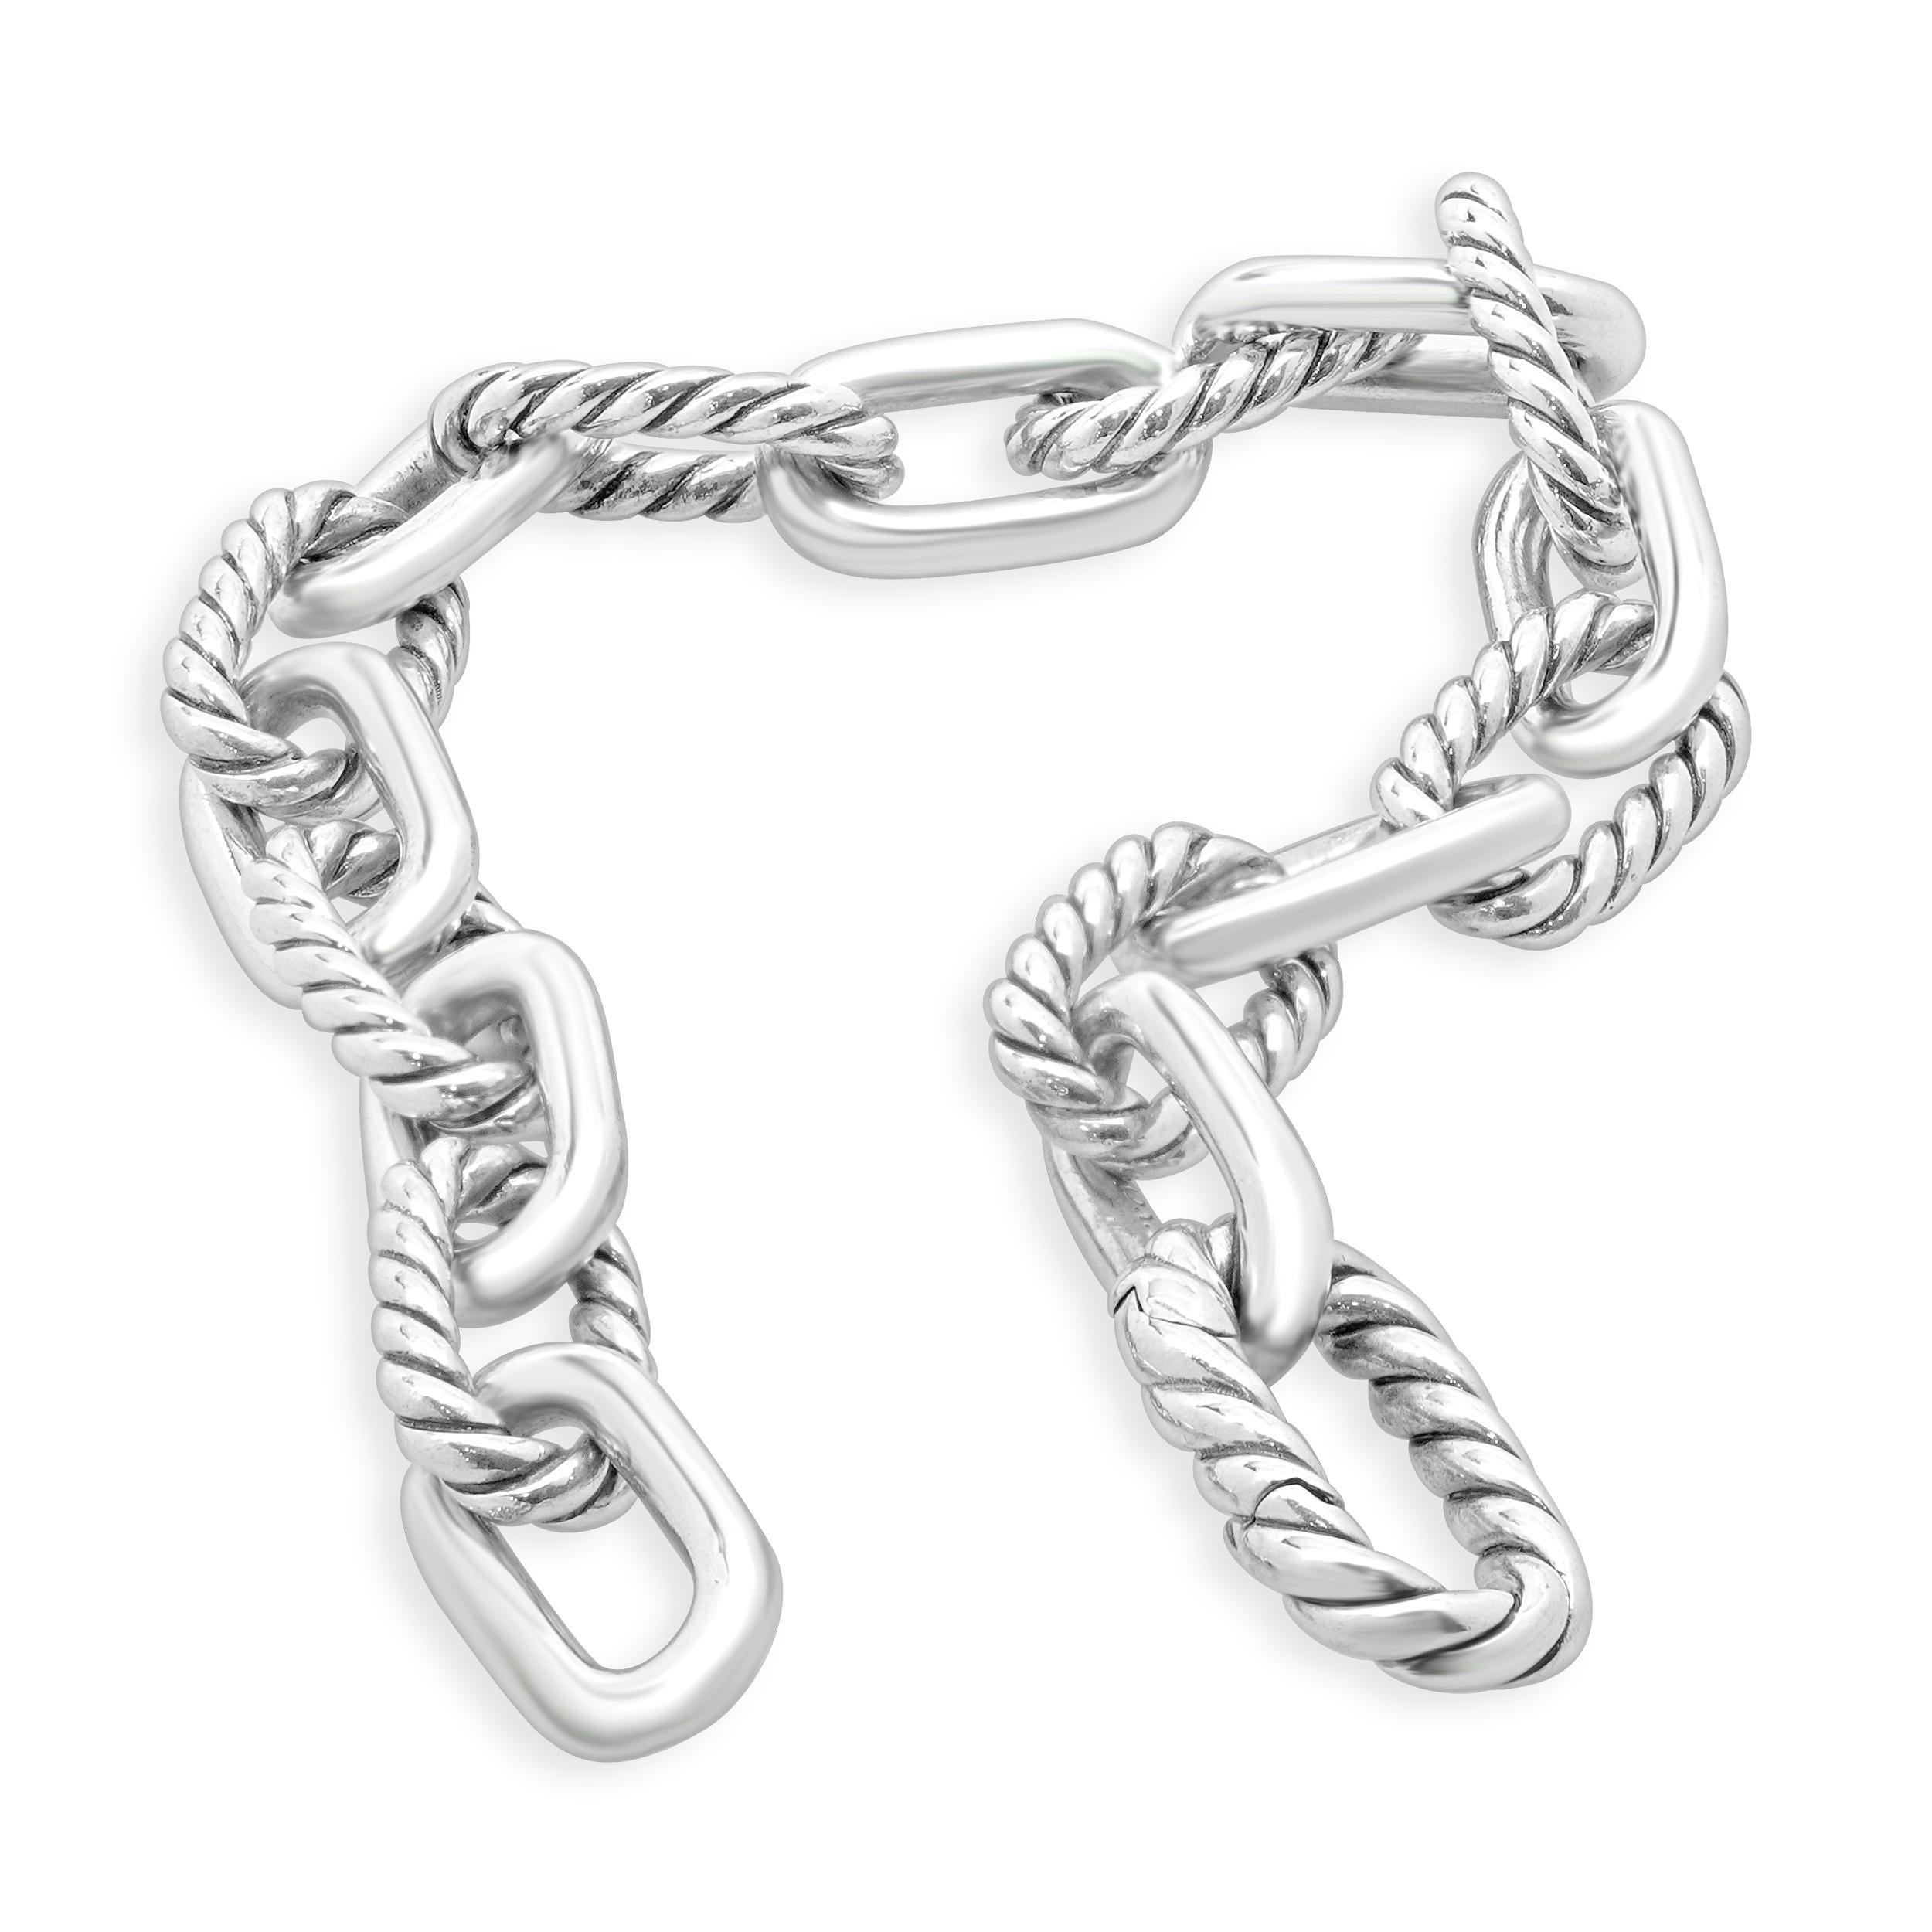 Women's or Men's David Yurman Sterling Silver Oval Cable Link Bracelet